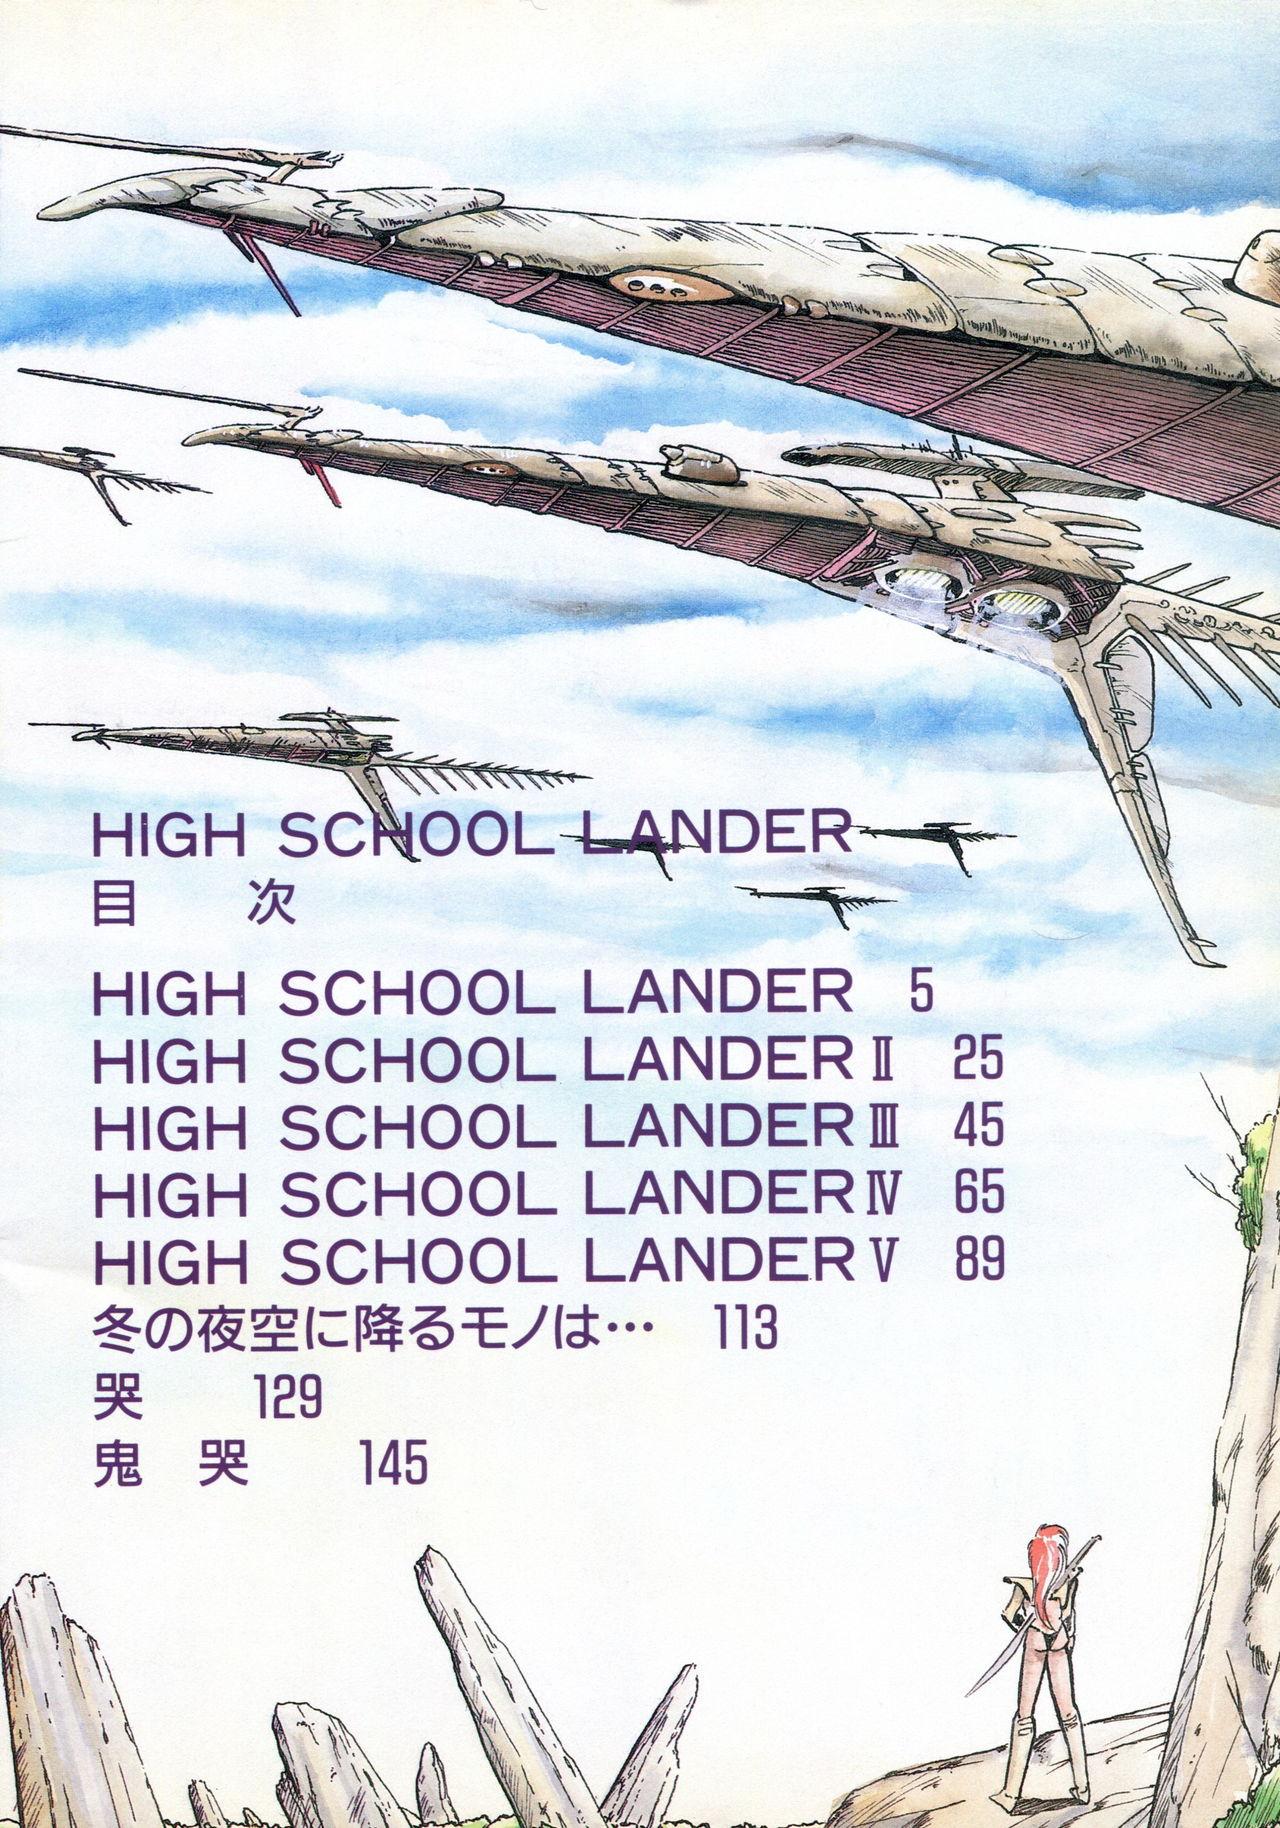 HIGH SCHOOL LANDER 2